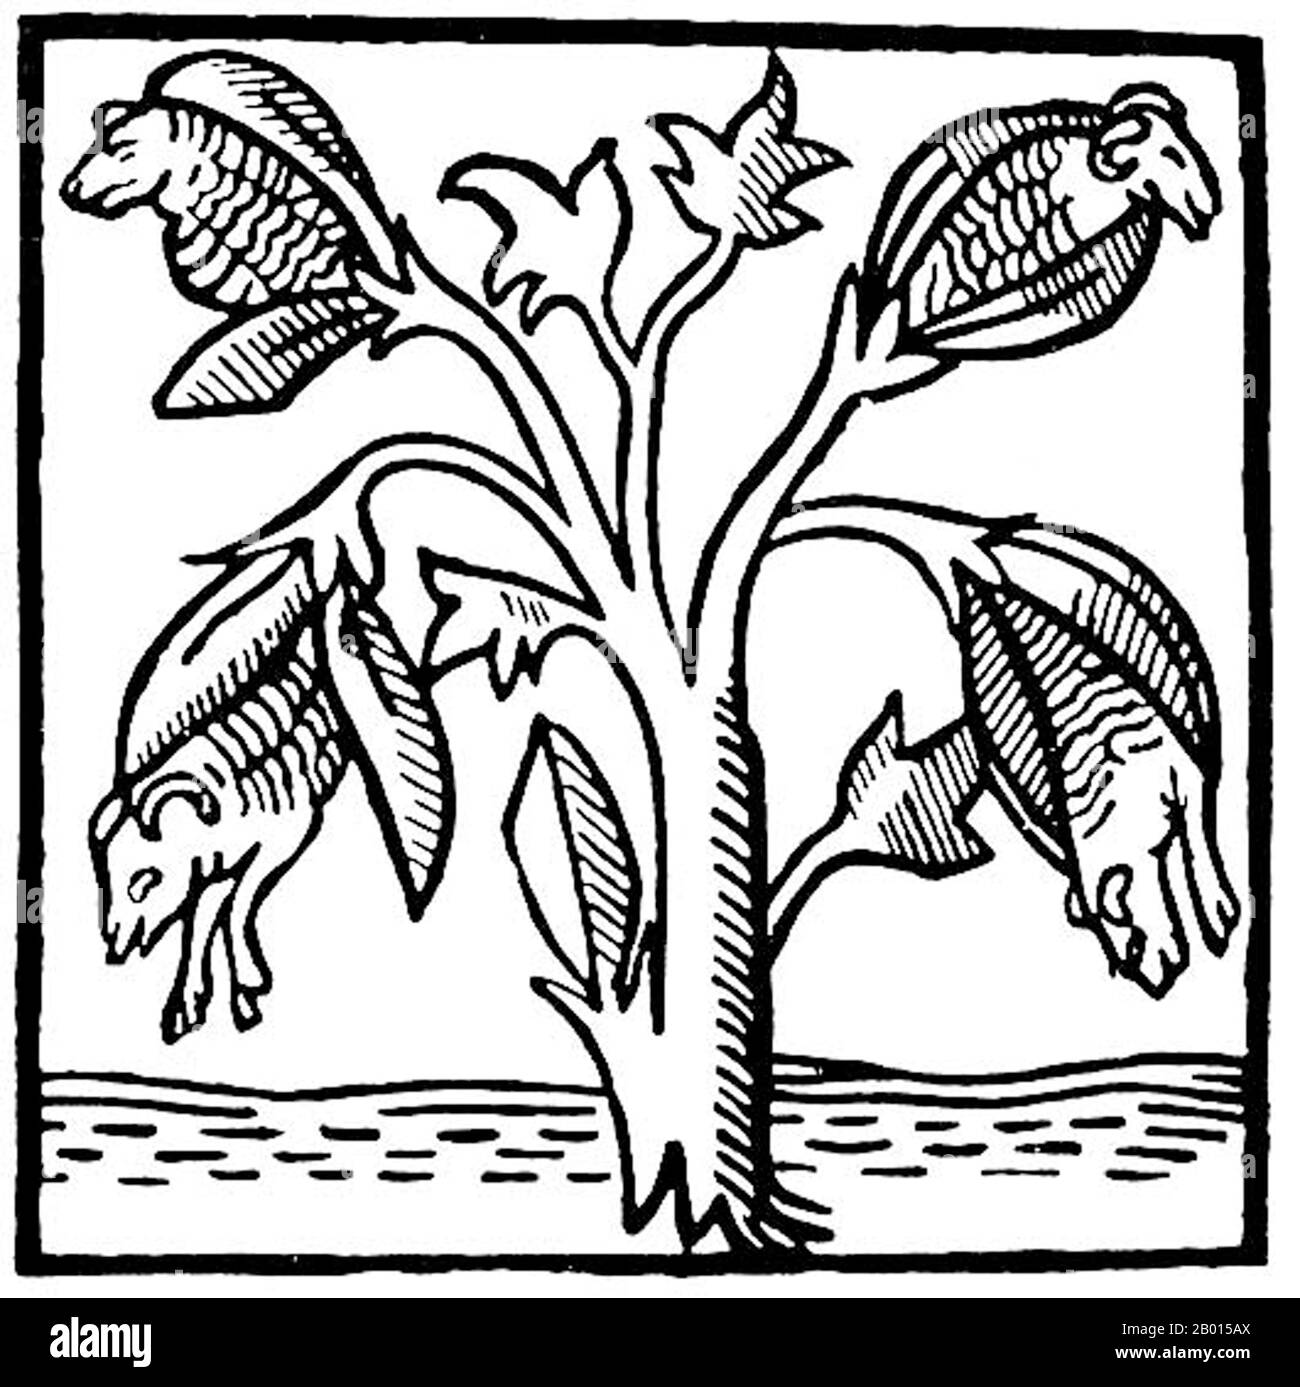 Indien: Die "Baumwollpflanze", wie sie von John Mandeville (ca.1371) vorgestellt wurde. Baumwollpflanze, wie sie von John Mandeville vorgestellt und gezeichnet wurde; 'dort wuchs [Indien] ein wunderbarer Baum, der kleine Lämmer an den Enden seiner Zweige trug. Diese Zweige waren so biegsam, dass sie sich niederbeugten, um den Lämmern zu erlauben, sich zu ernähren, wenn sie hungrig sind. Stockfoto